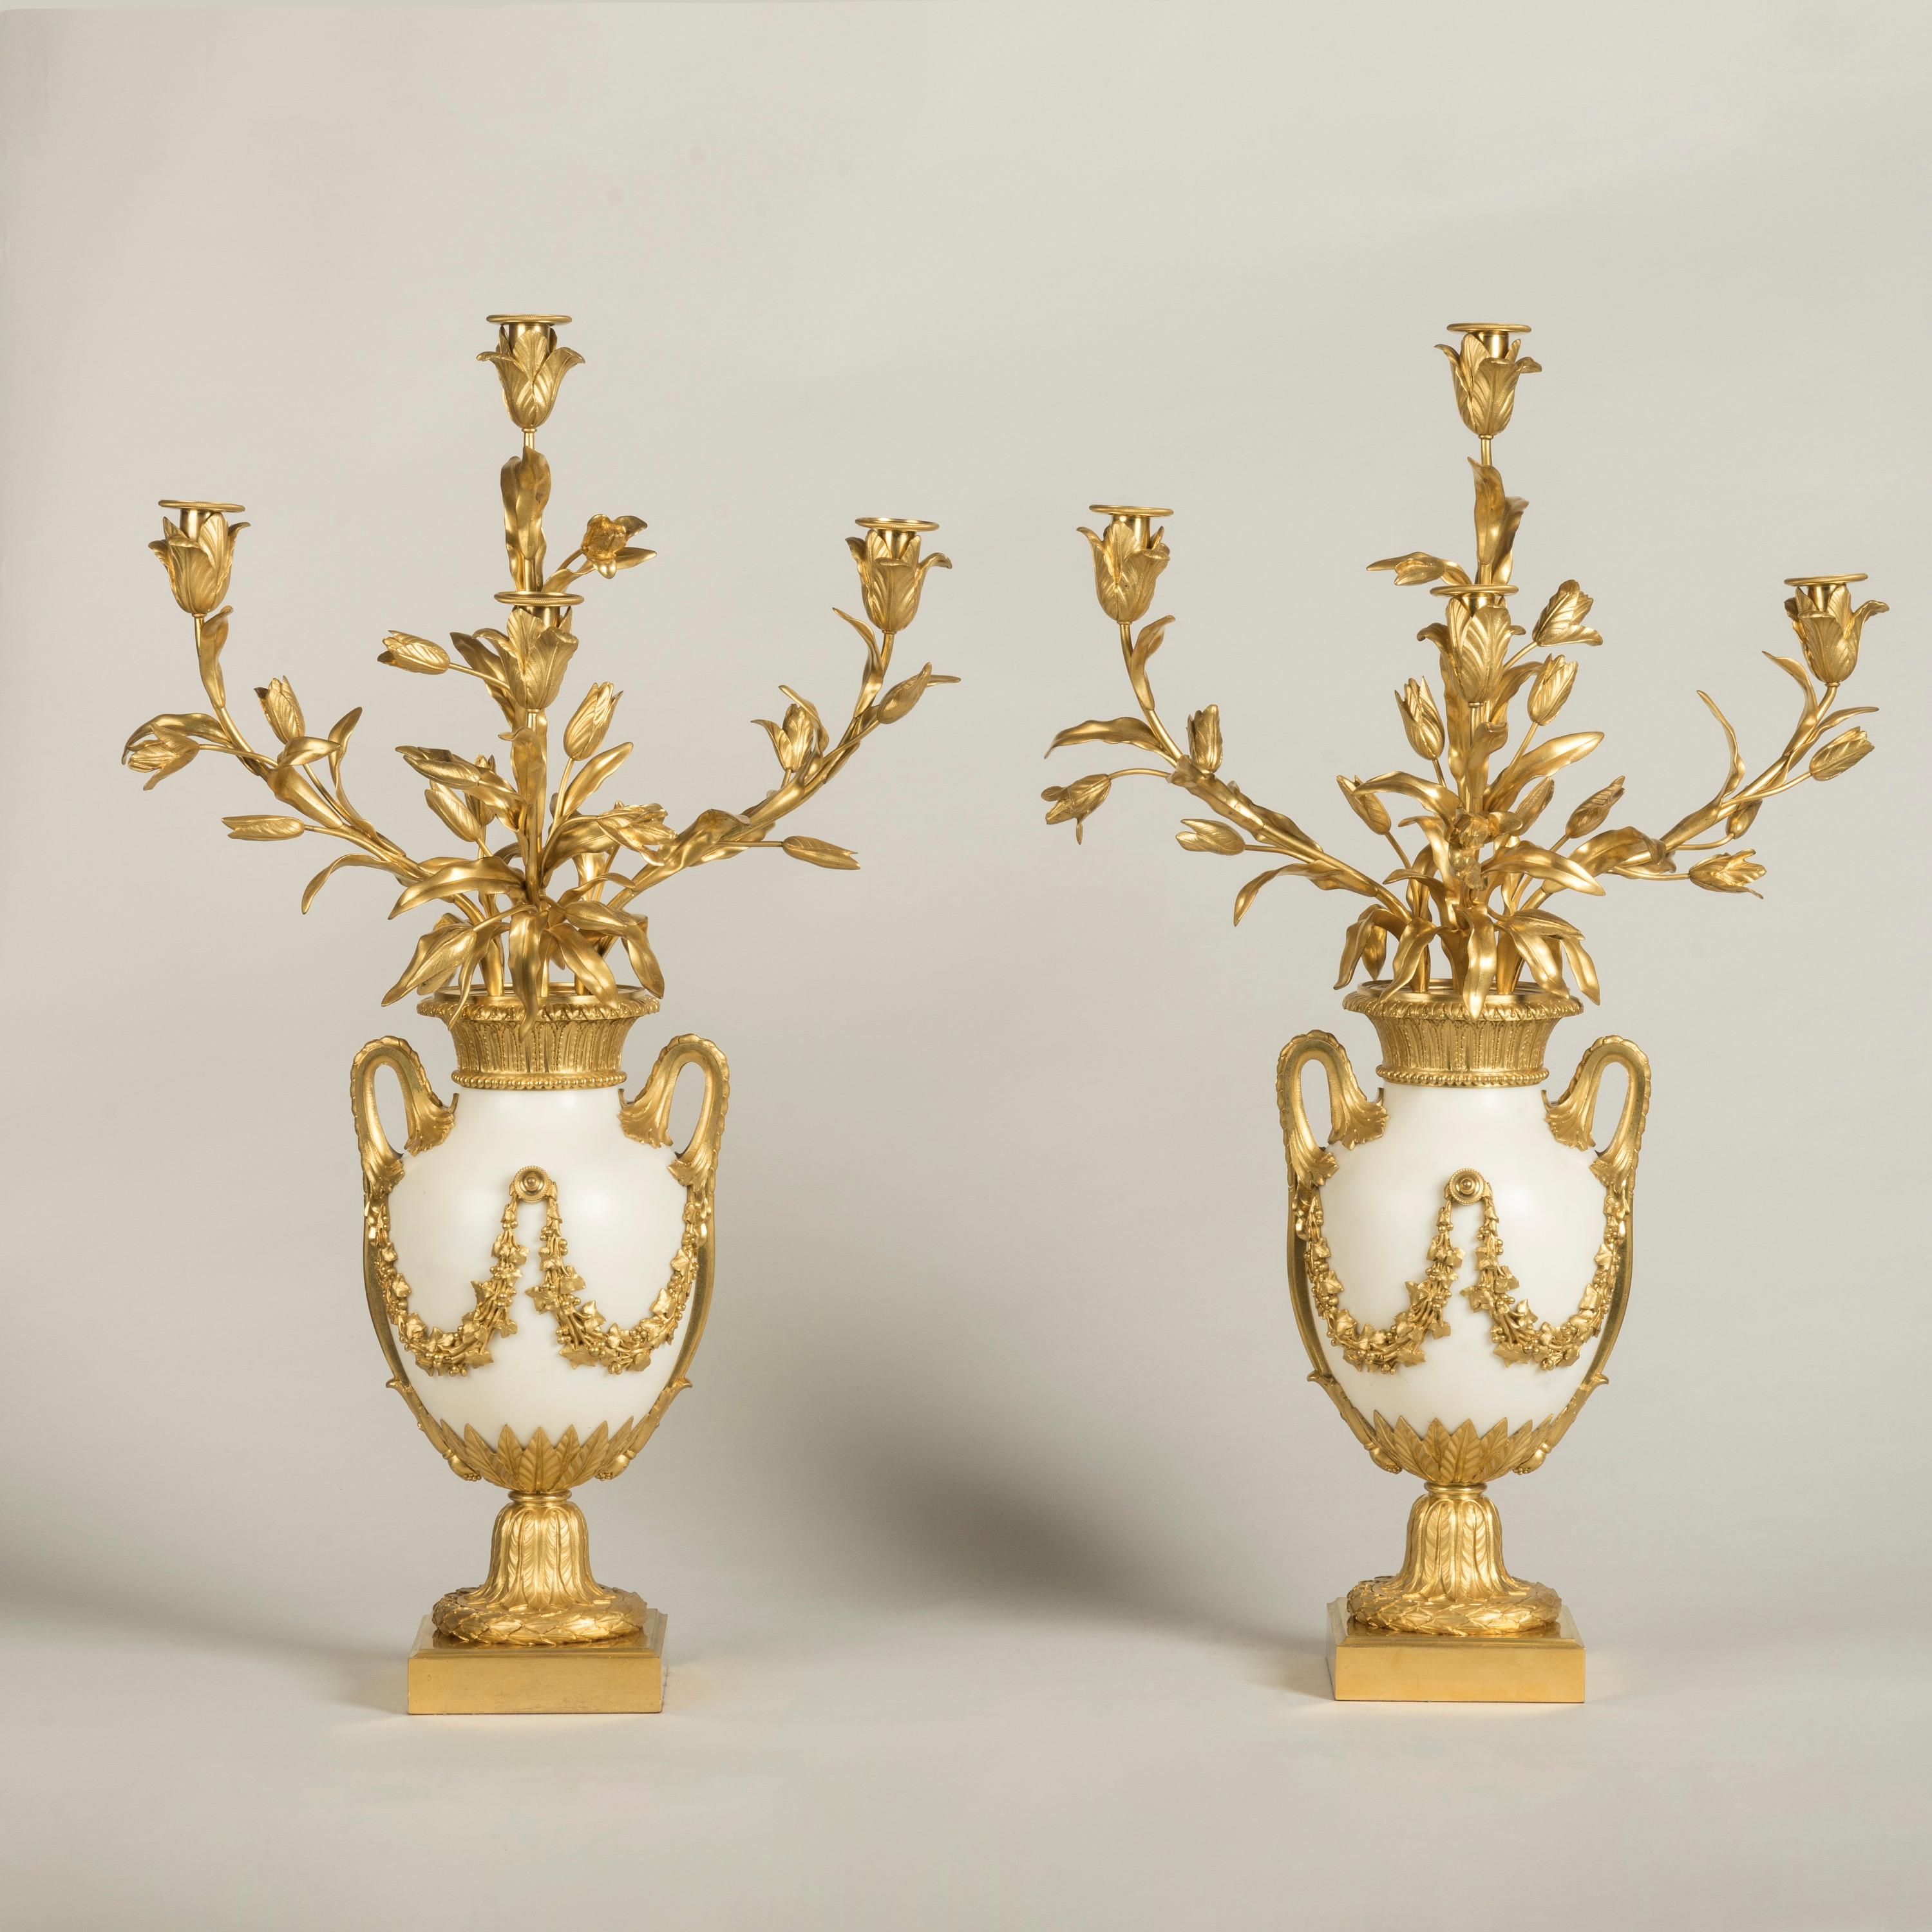 Ein feines Paar Ormolu-gefasste Kandelaber 
im Louis XVI-Stil

Die Vasen aus Carrara-Marmor mit quecksilbervergoldeten Beschlägen stehen auf quadratischen Sockeln mit lorbeerbekränzten Sockeln; die eiförmigen Marmorkörper mit blattverzierten,